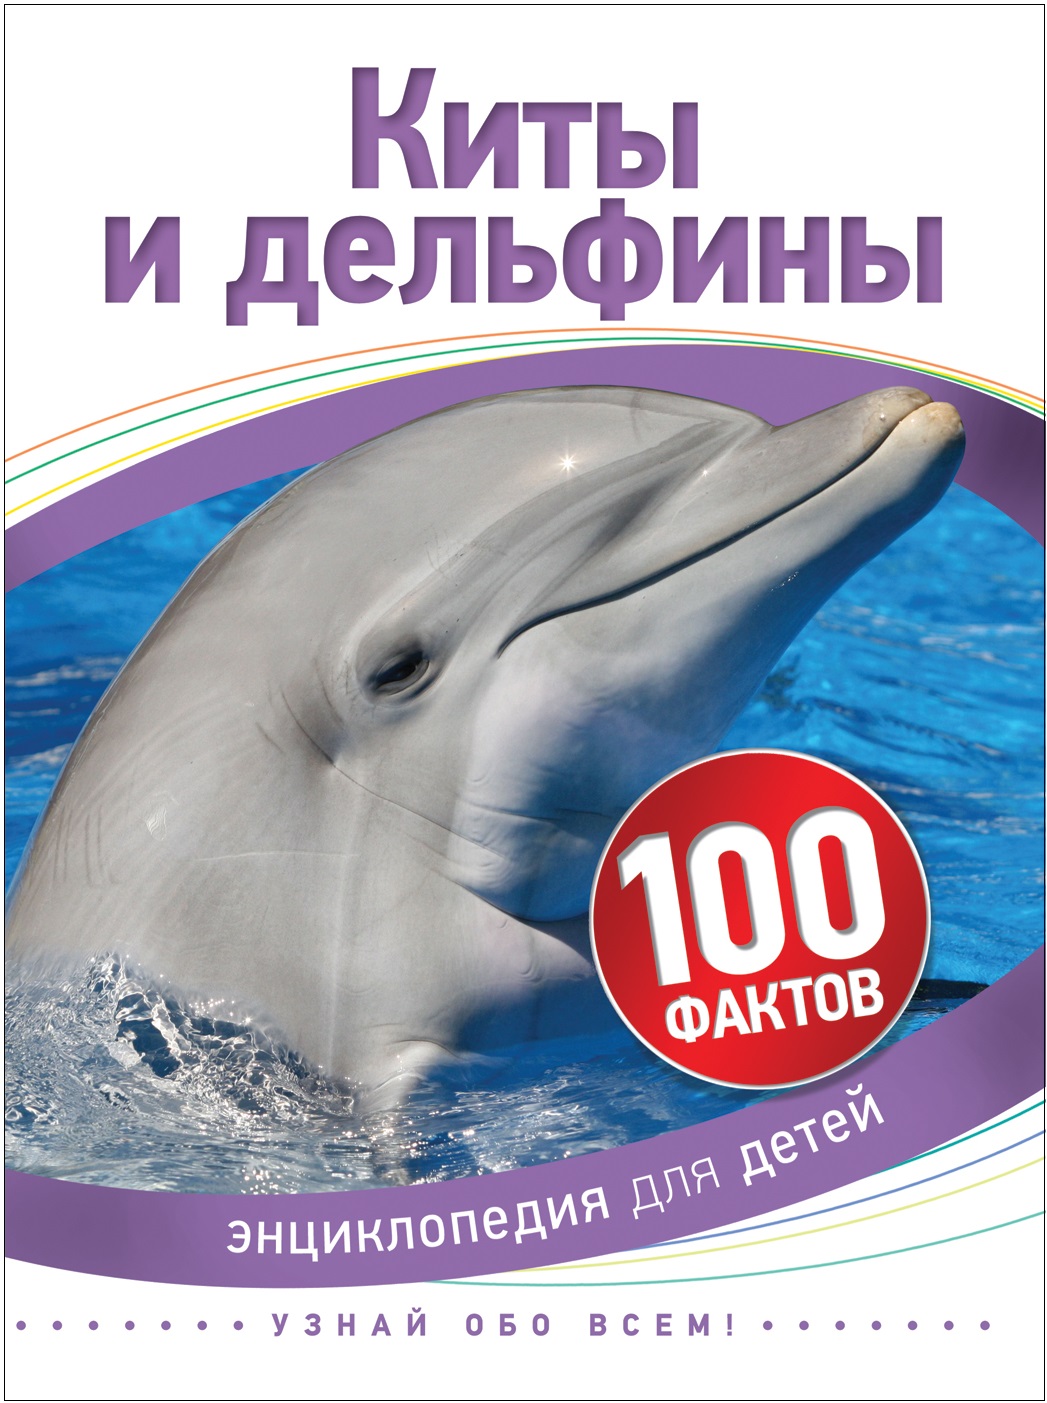 Книга 35069 "Киты и дельфины" 100 фактов Росмэн - Набережные Челны 